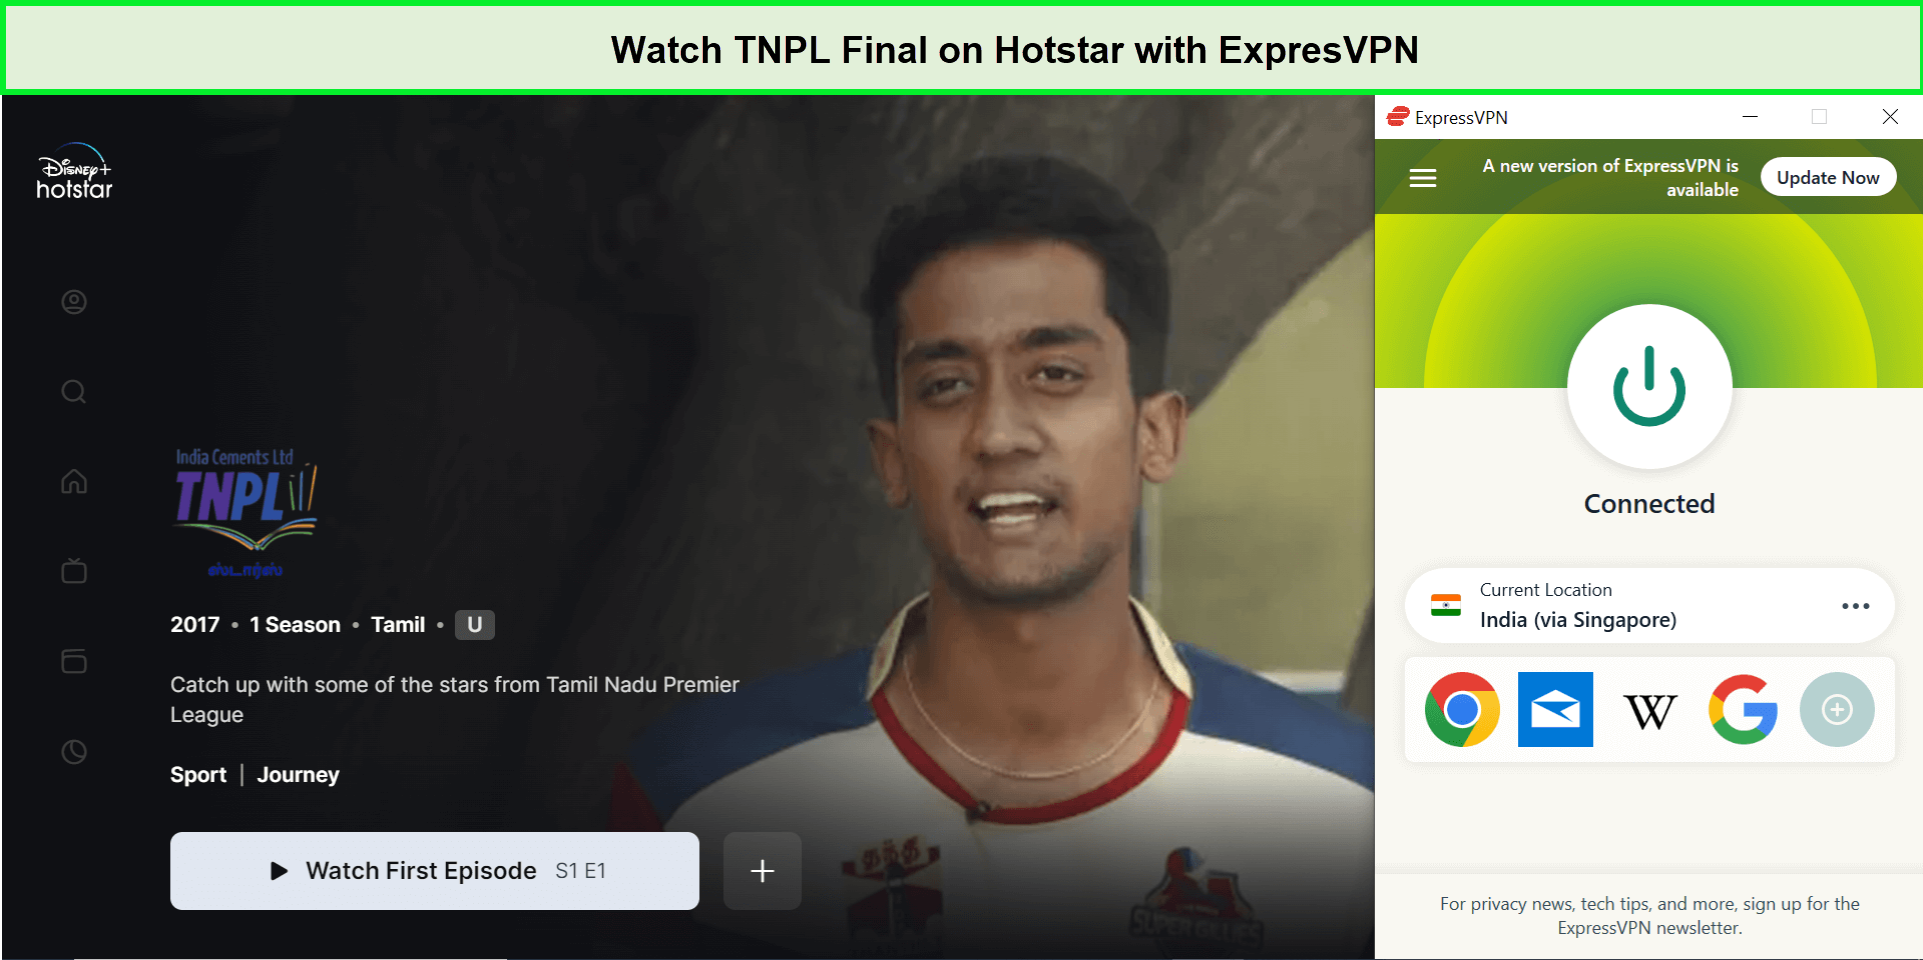 Watch-TNPL-Final-in-UK-on-Hotstar-with-ExpresVPN